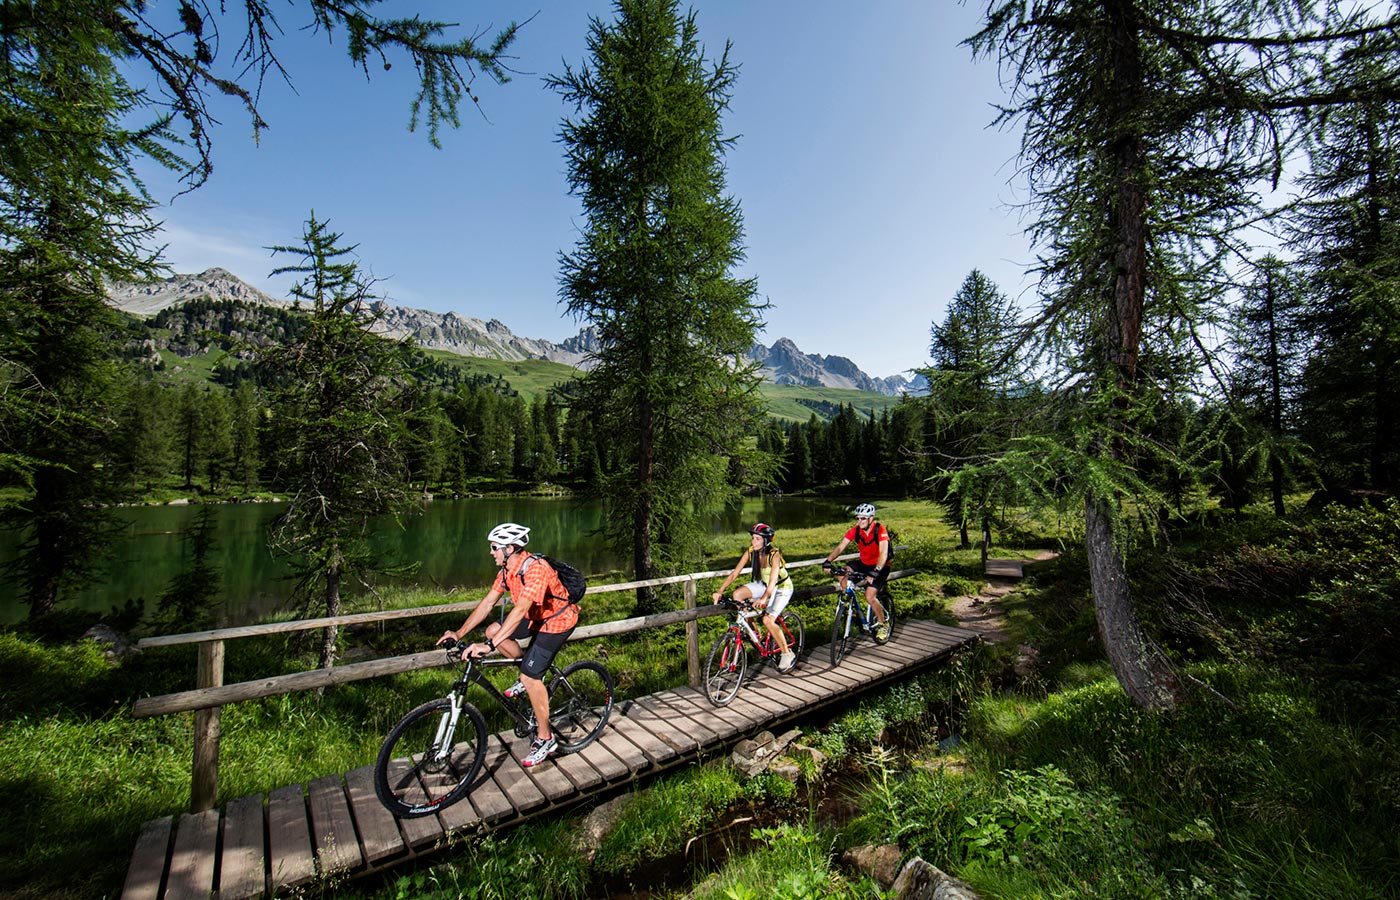 Turisti in bicicletta si godono un escursione in bici immersi nella natura